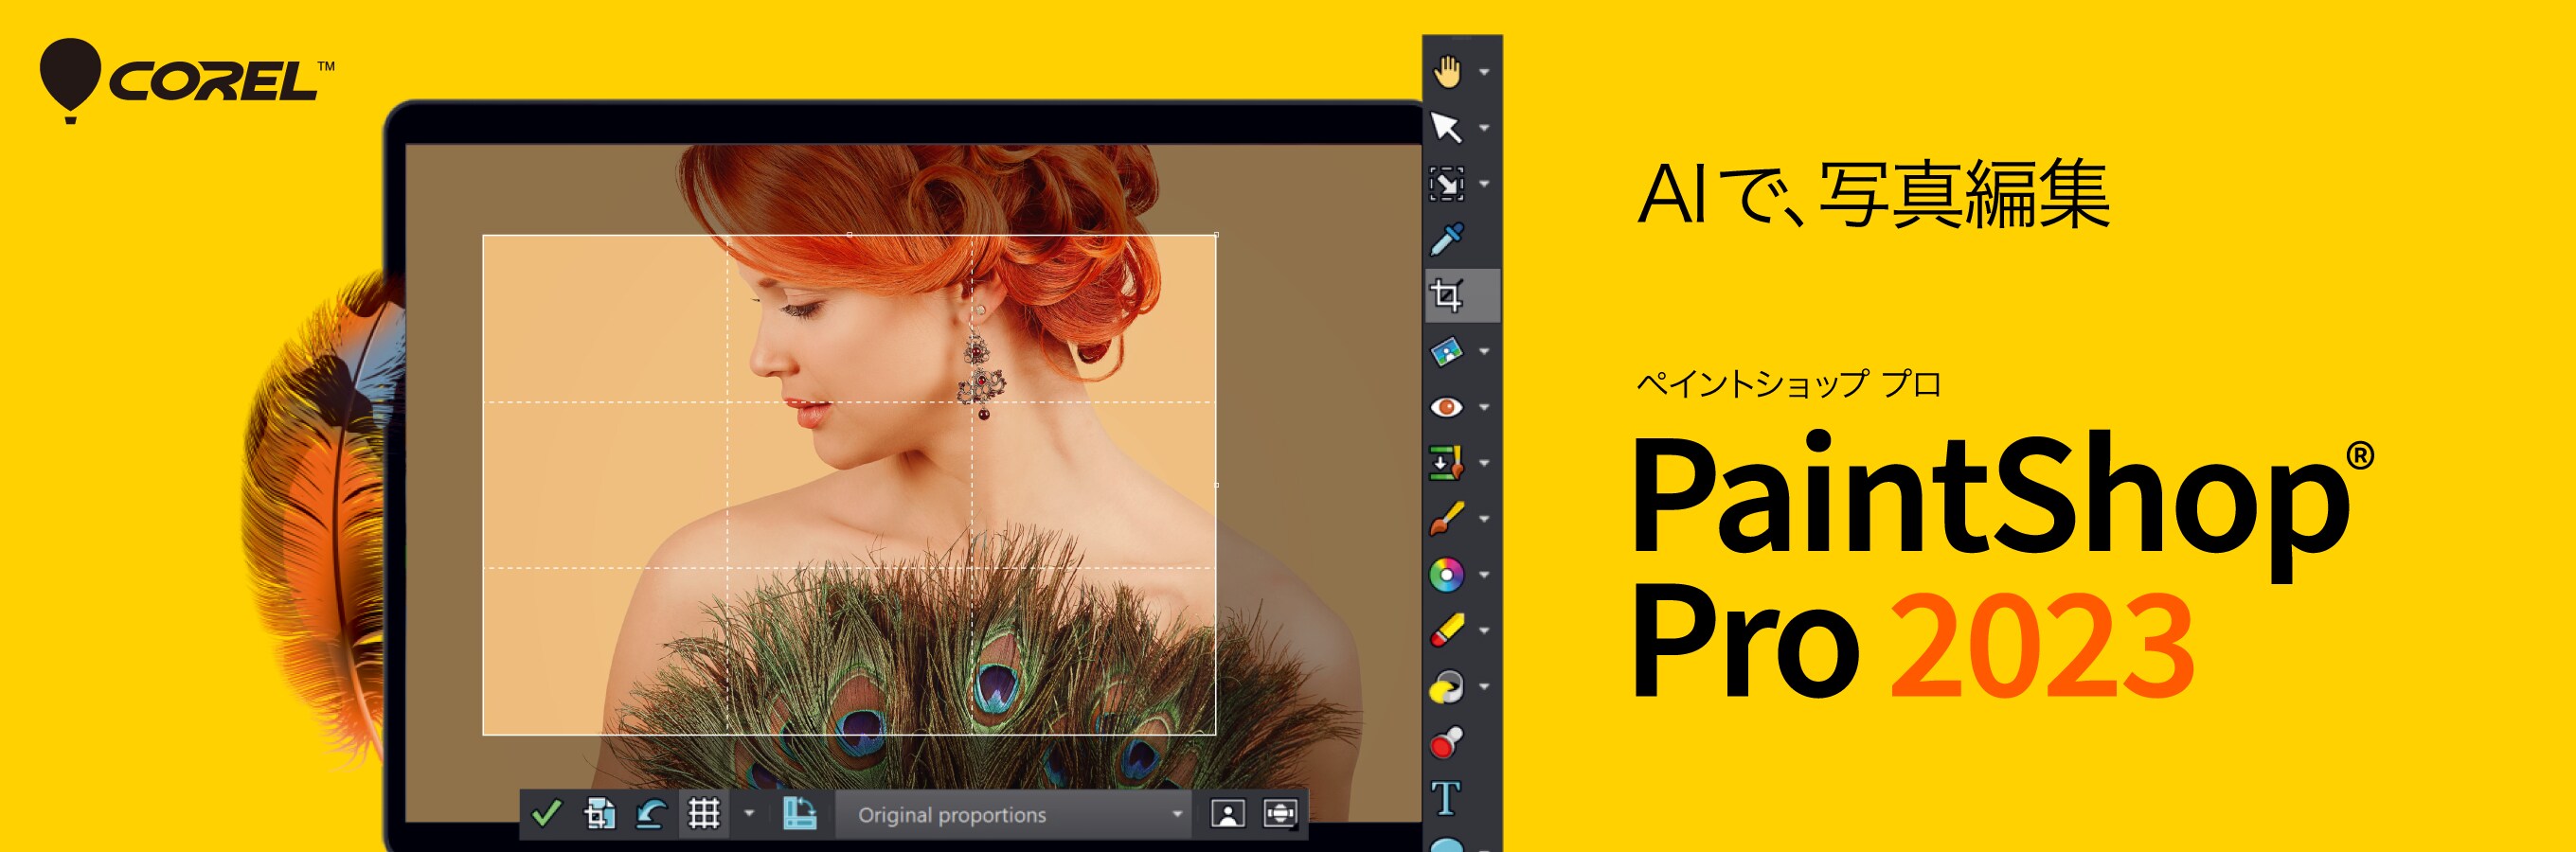 PaintShop Pro 2023 - 写真編集ソフト